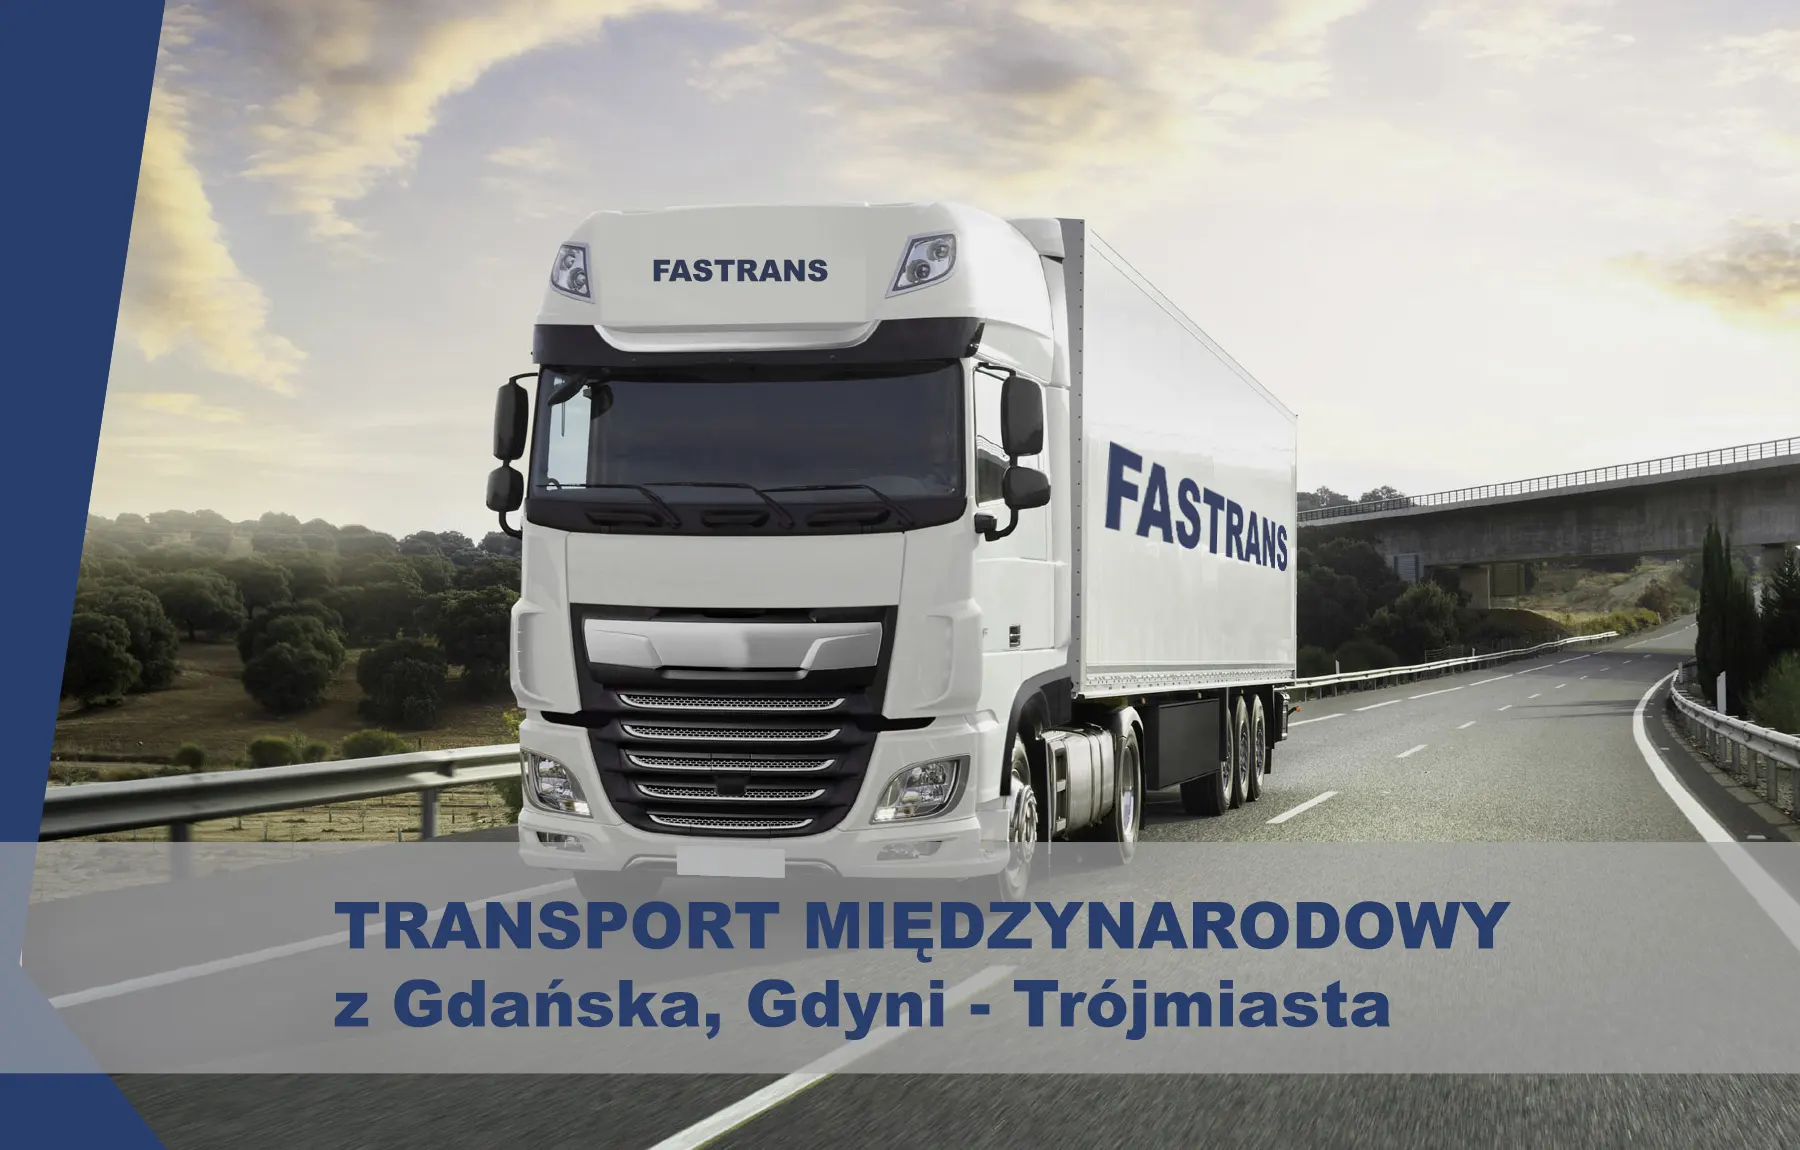 Transport międzynarodowy Gdańsk, Gdynia, Trójmiasto.